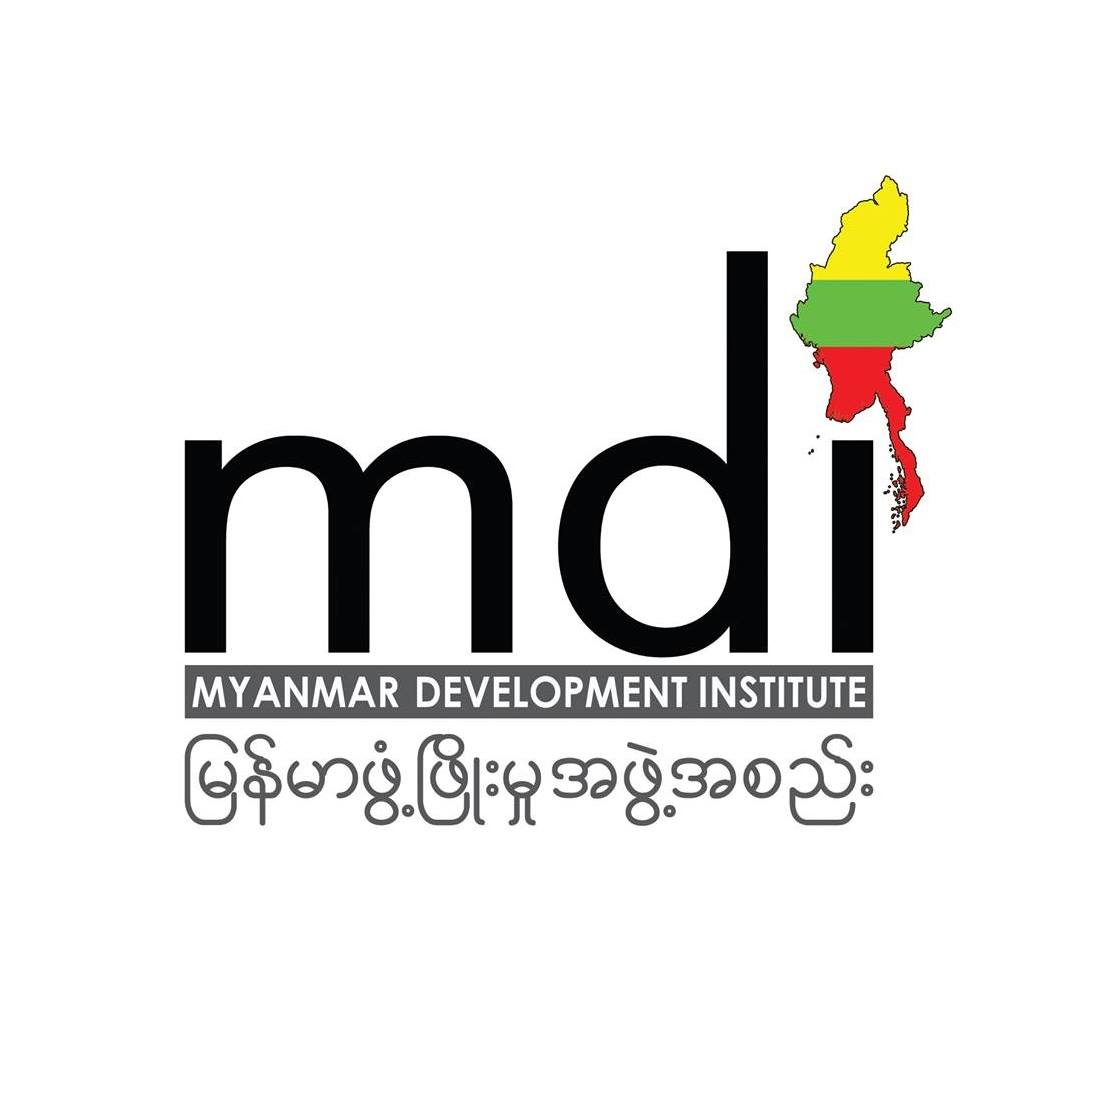 Myanmar Development Institute on Twitter: "Vacancy Announcement: Technical  Associate & Technical Specialist https://t.co/hVMfuDlFIz  https://t.co/JU3qZseZQr" / Twitter